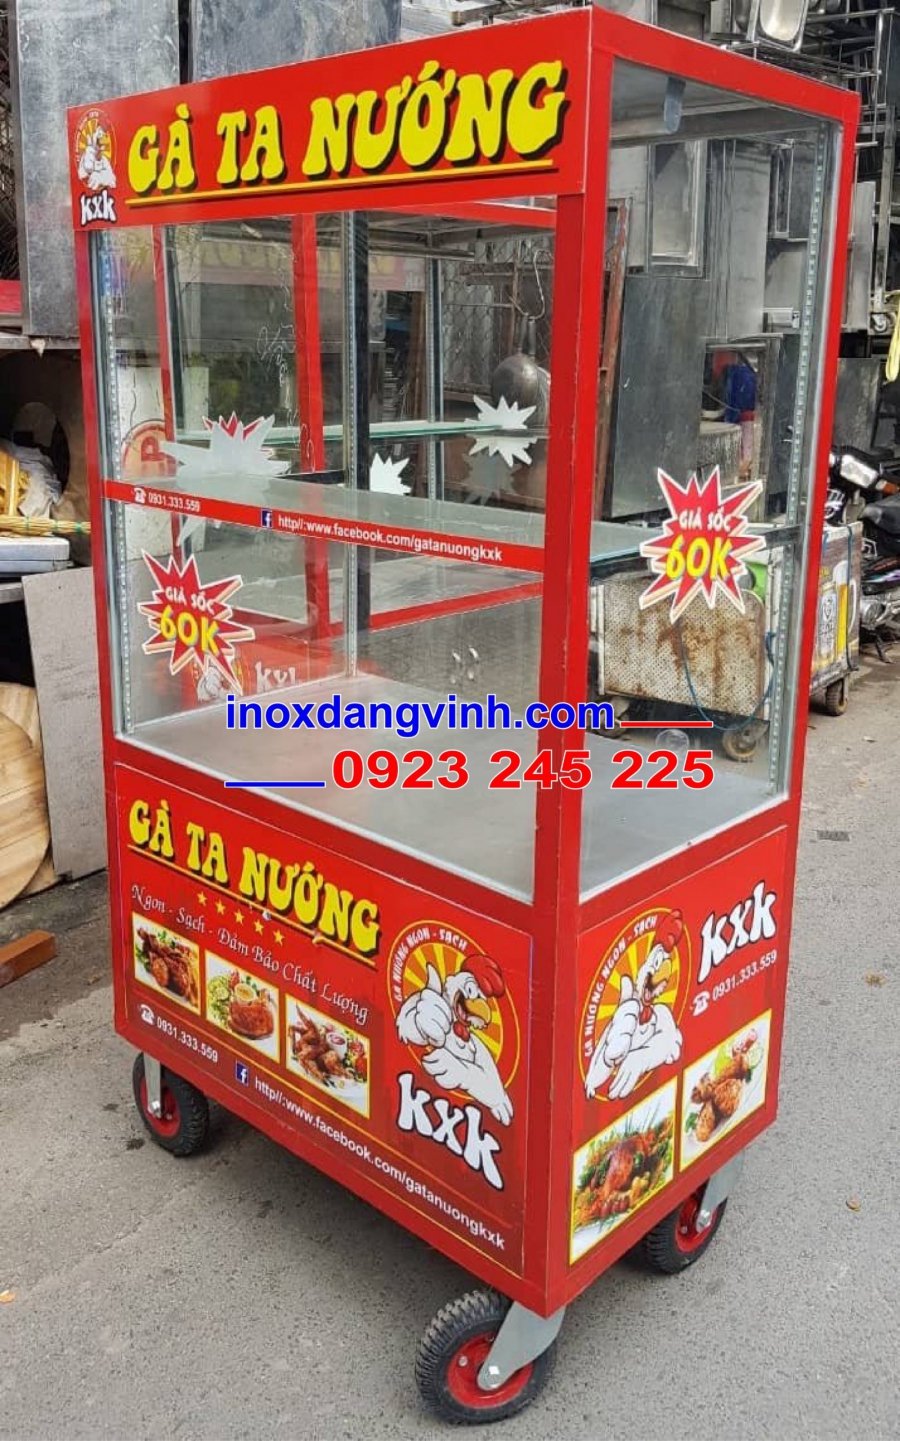 Mua xe bánh mì Thổ Nhĩ Kỳ Gò Vấp Tp. Hồ Chí Minh ở đâu?